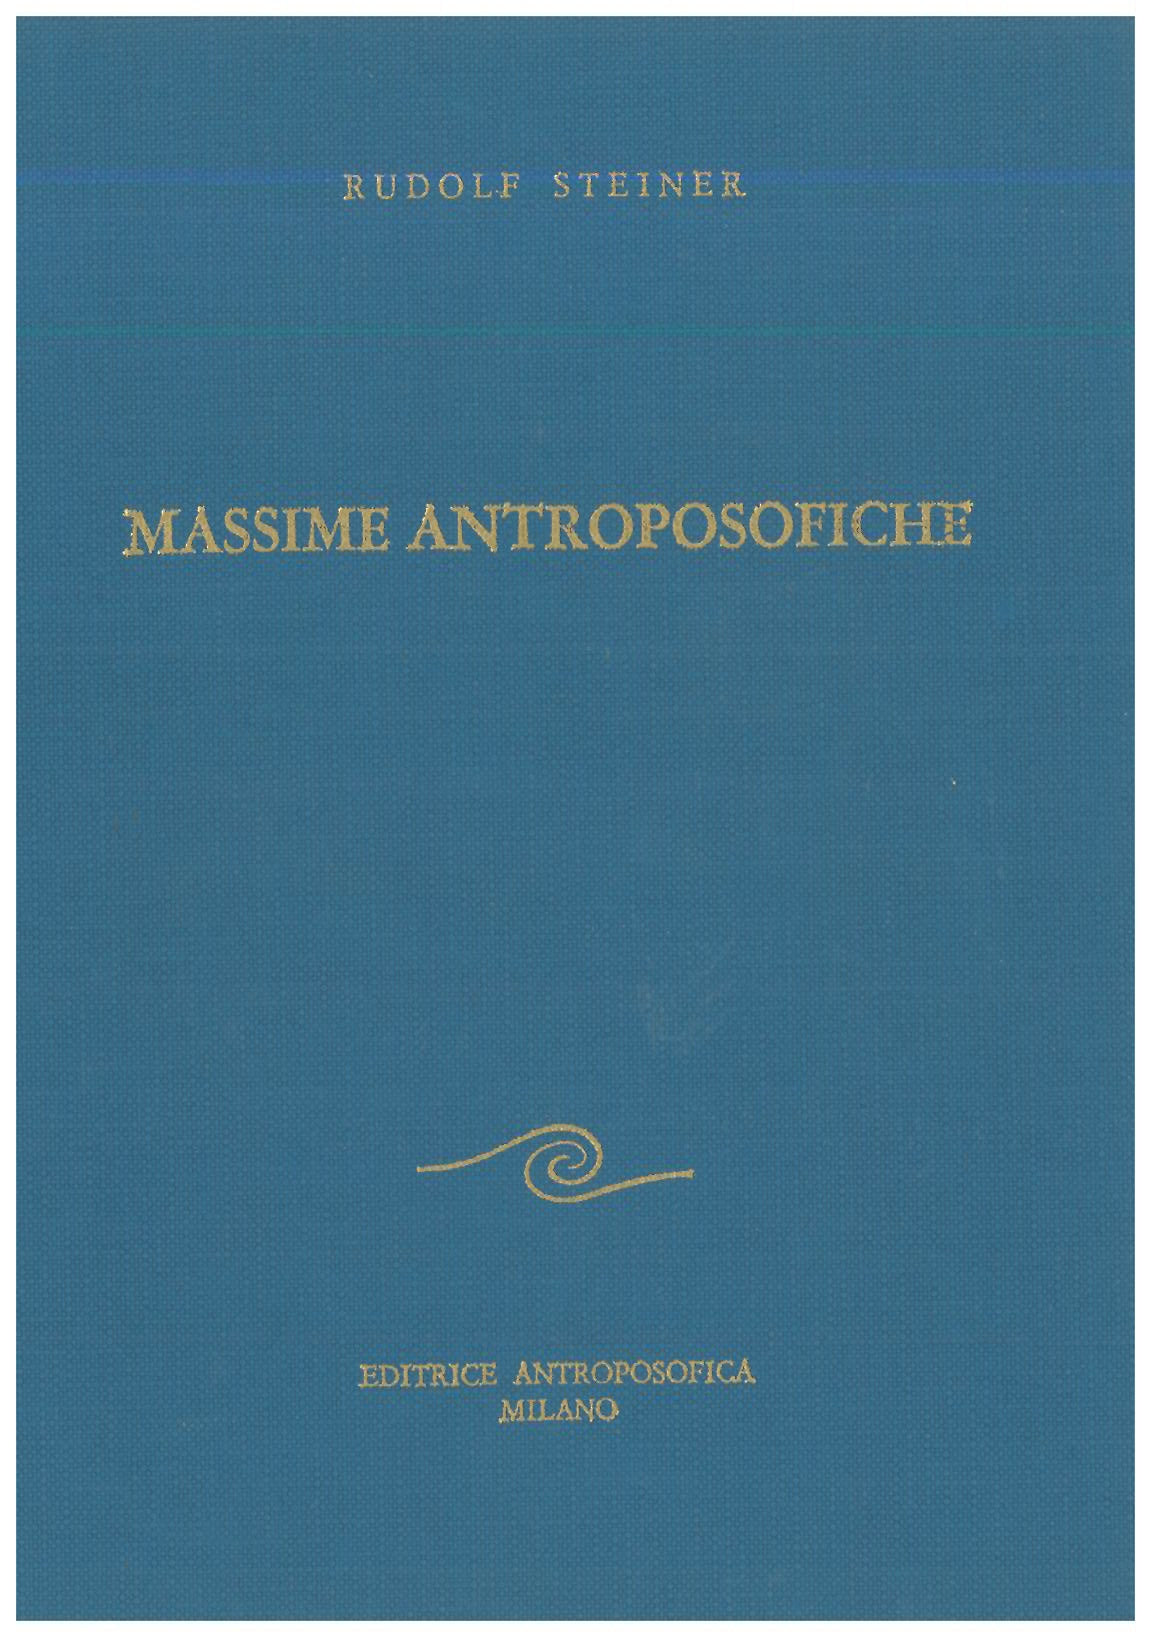 Massime antroposofiche - Rudolf Steiner